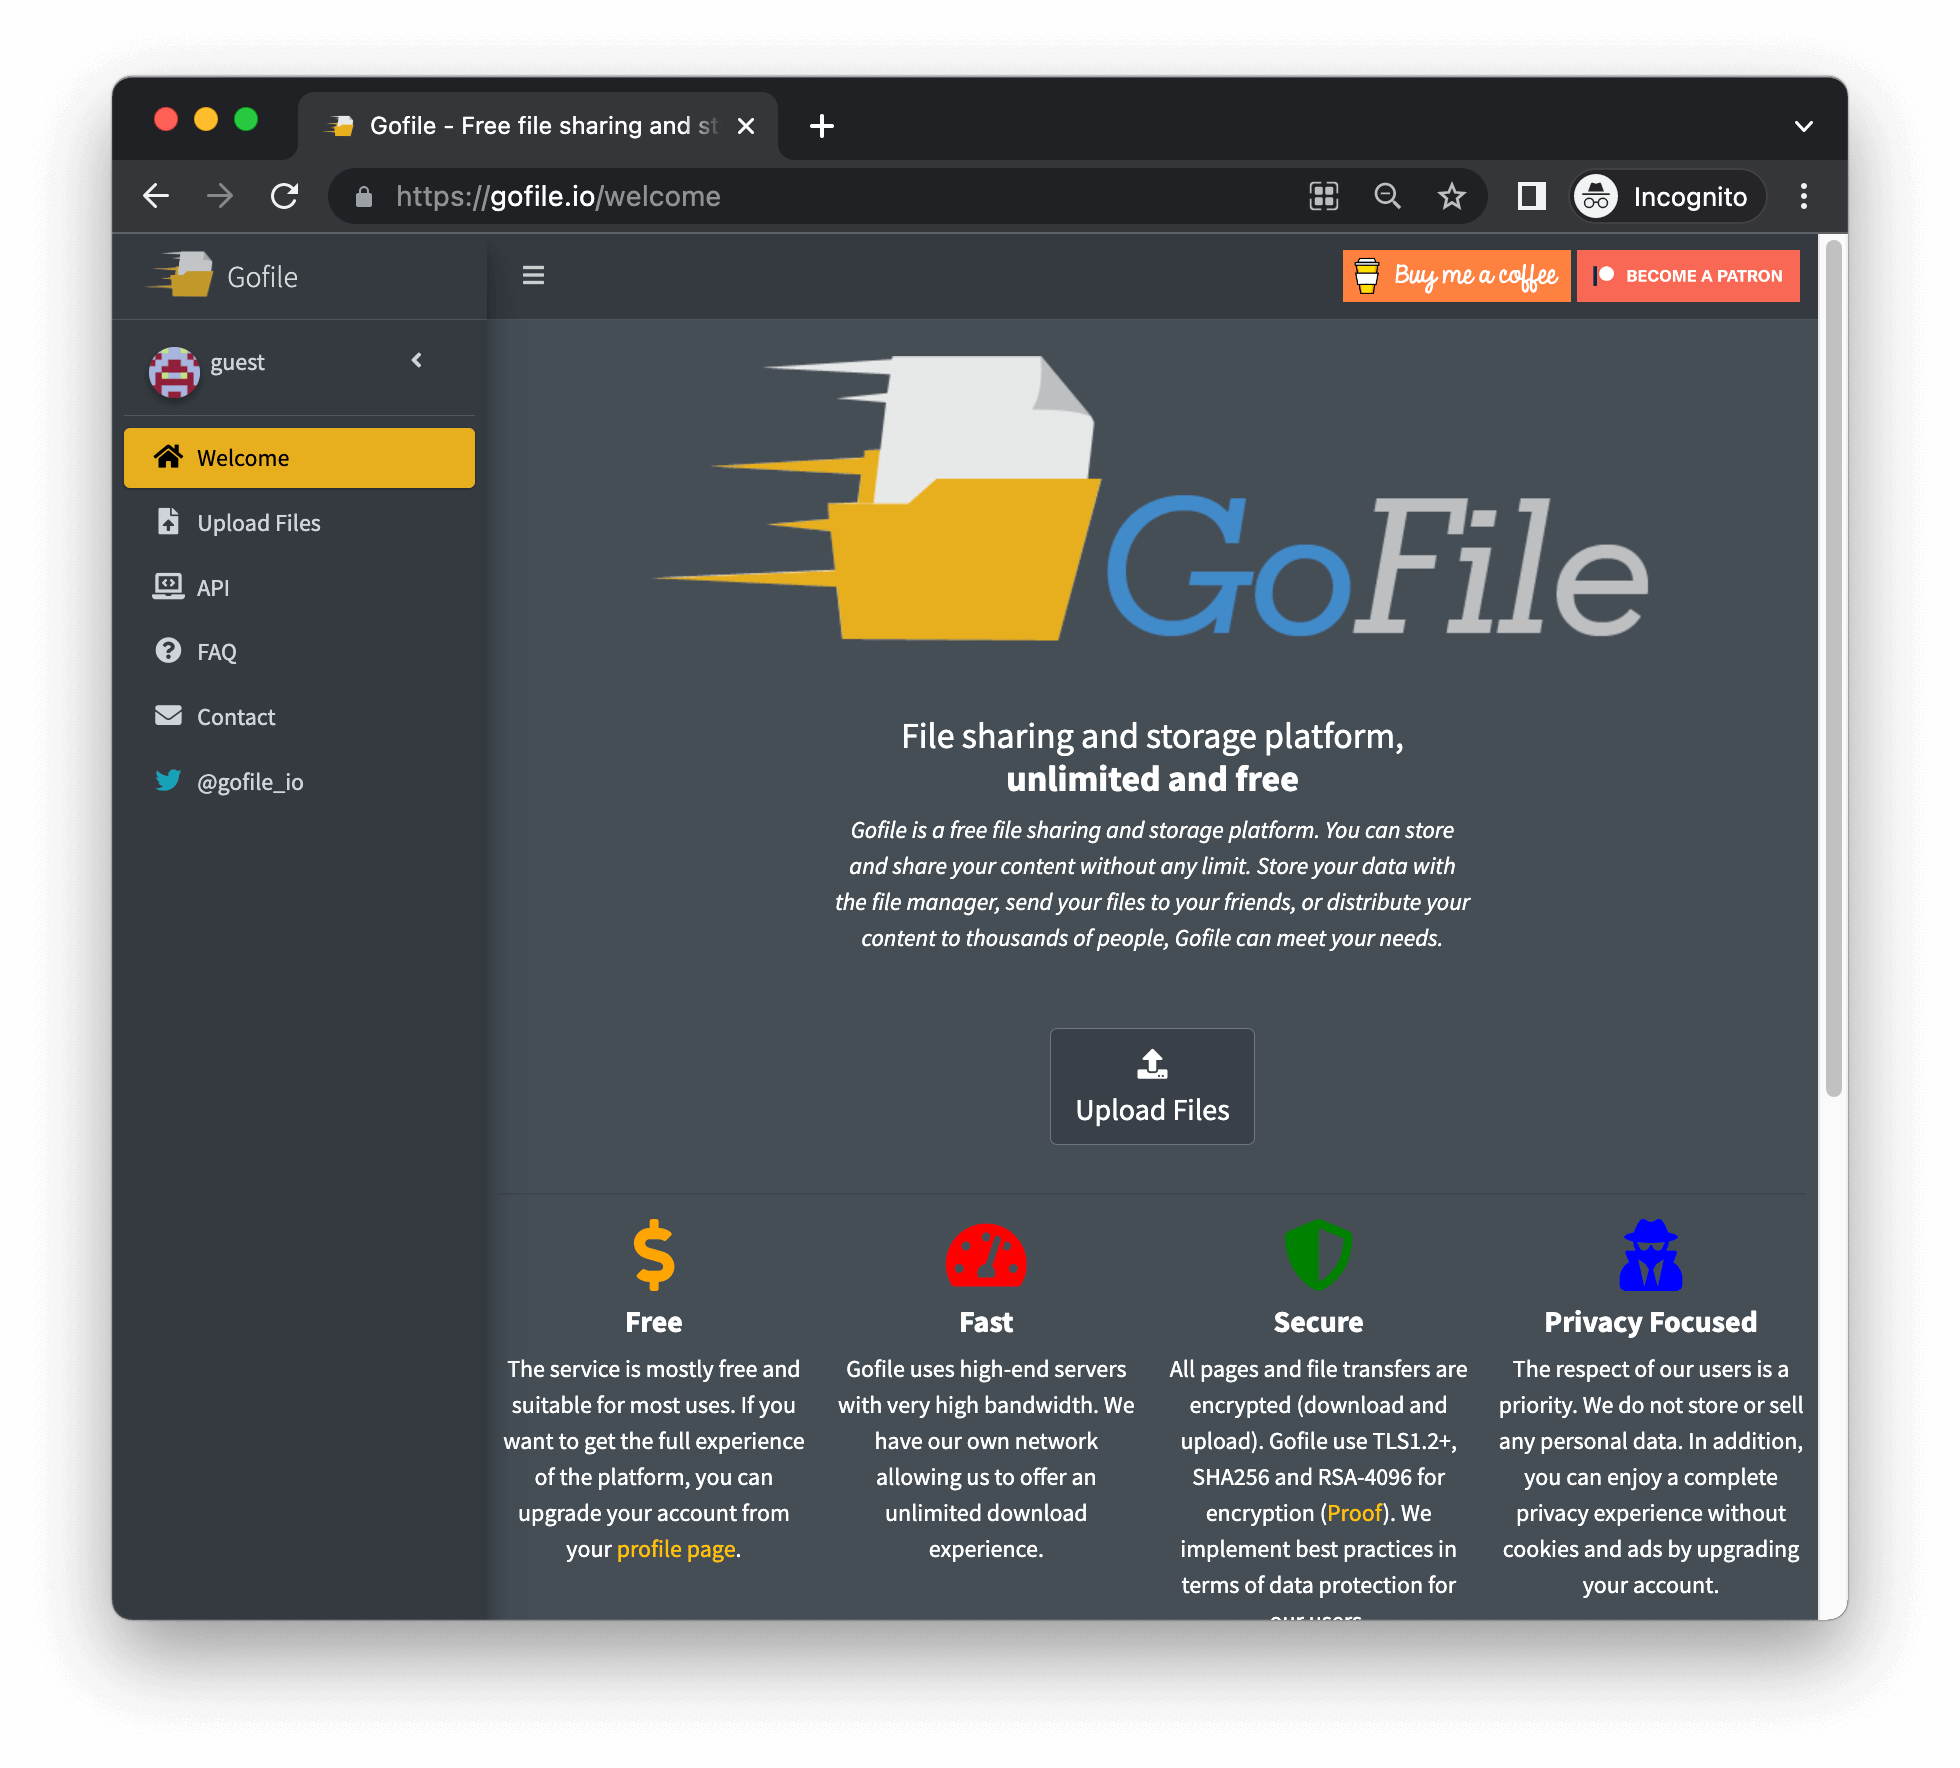 Gofile - Free file sharing and storage platform